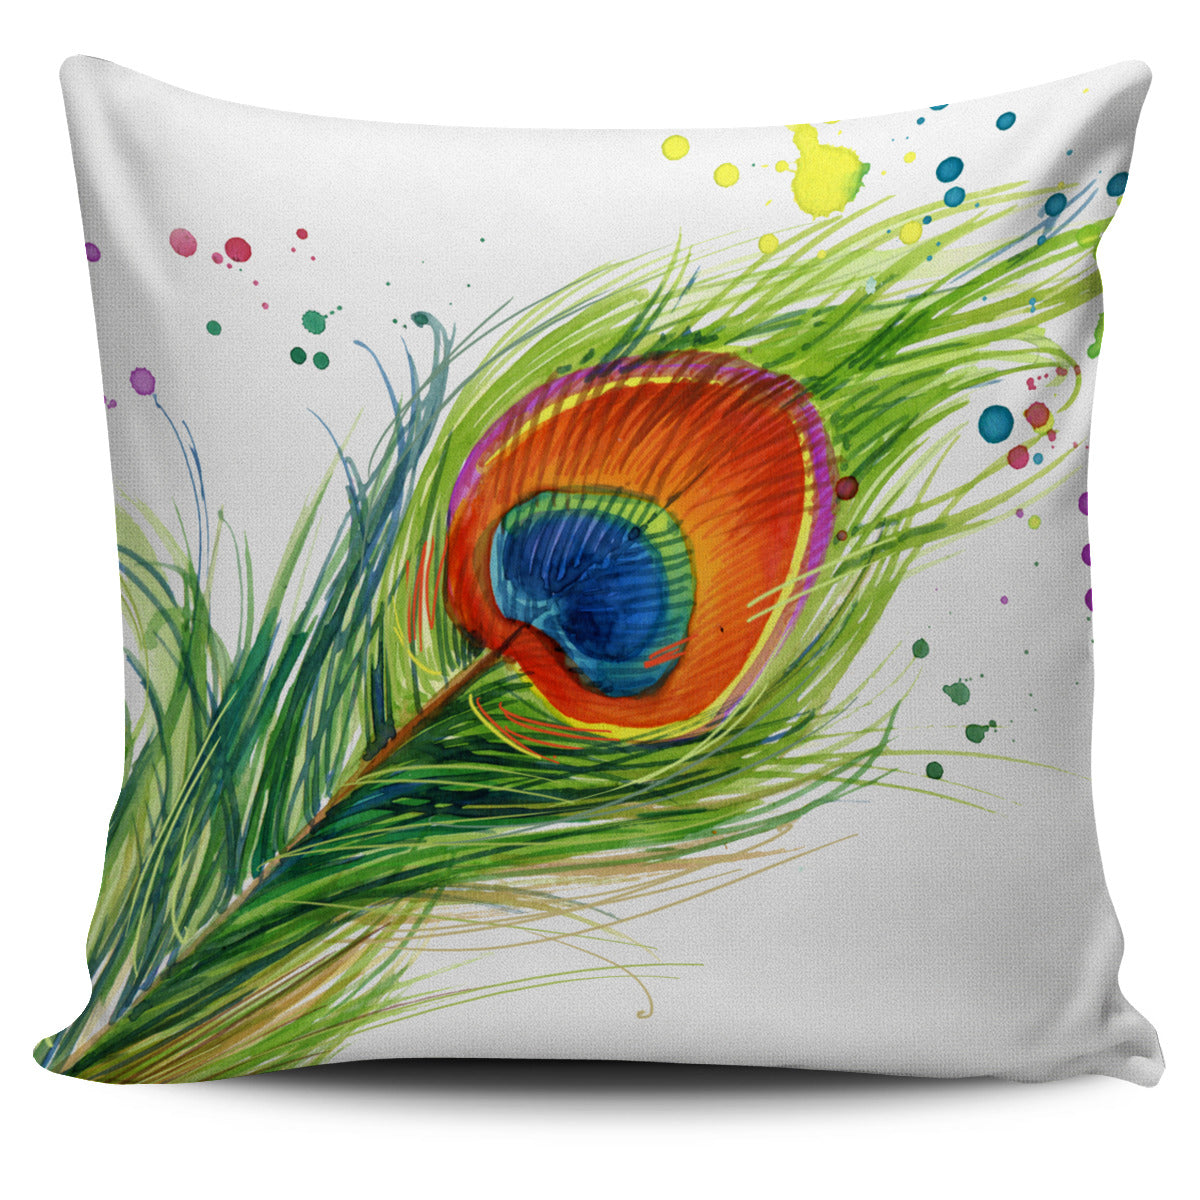 Peacock Paint Splatter Pillow Cover